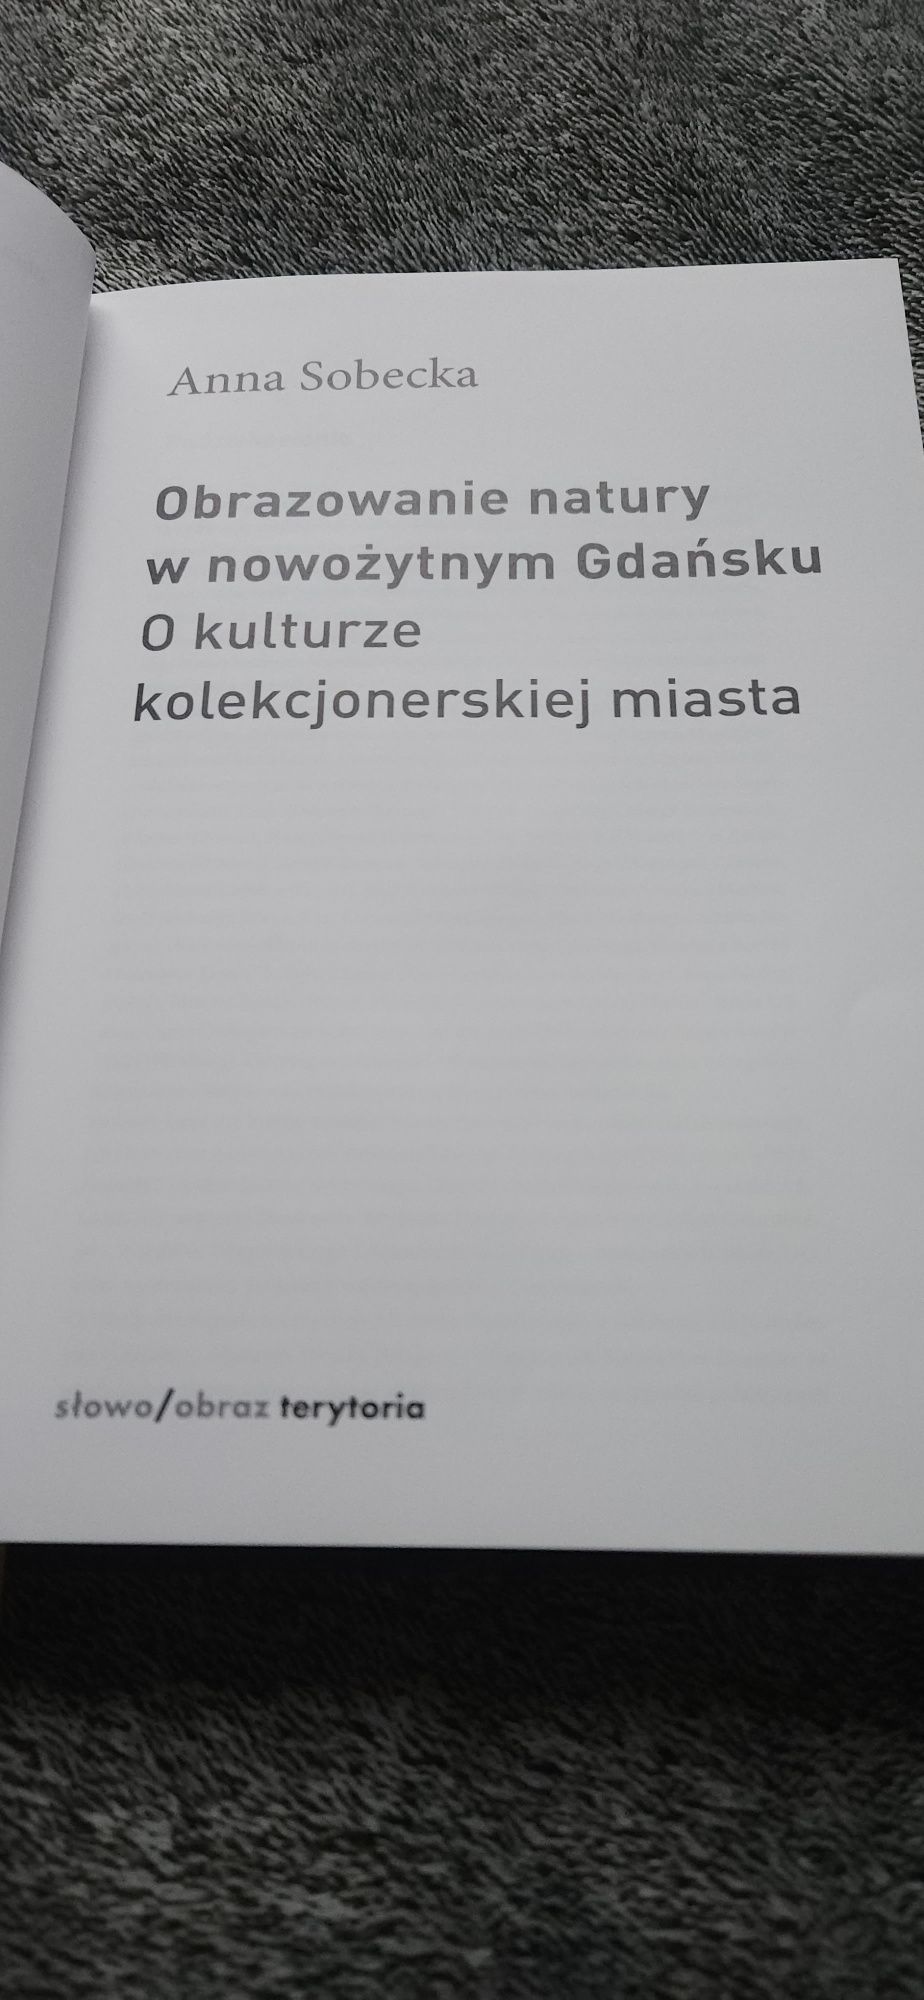 Obrazowanie natury w nowożytnym Gdańsku. Anna Sobecka